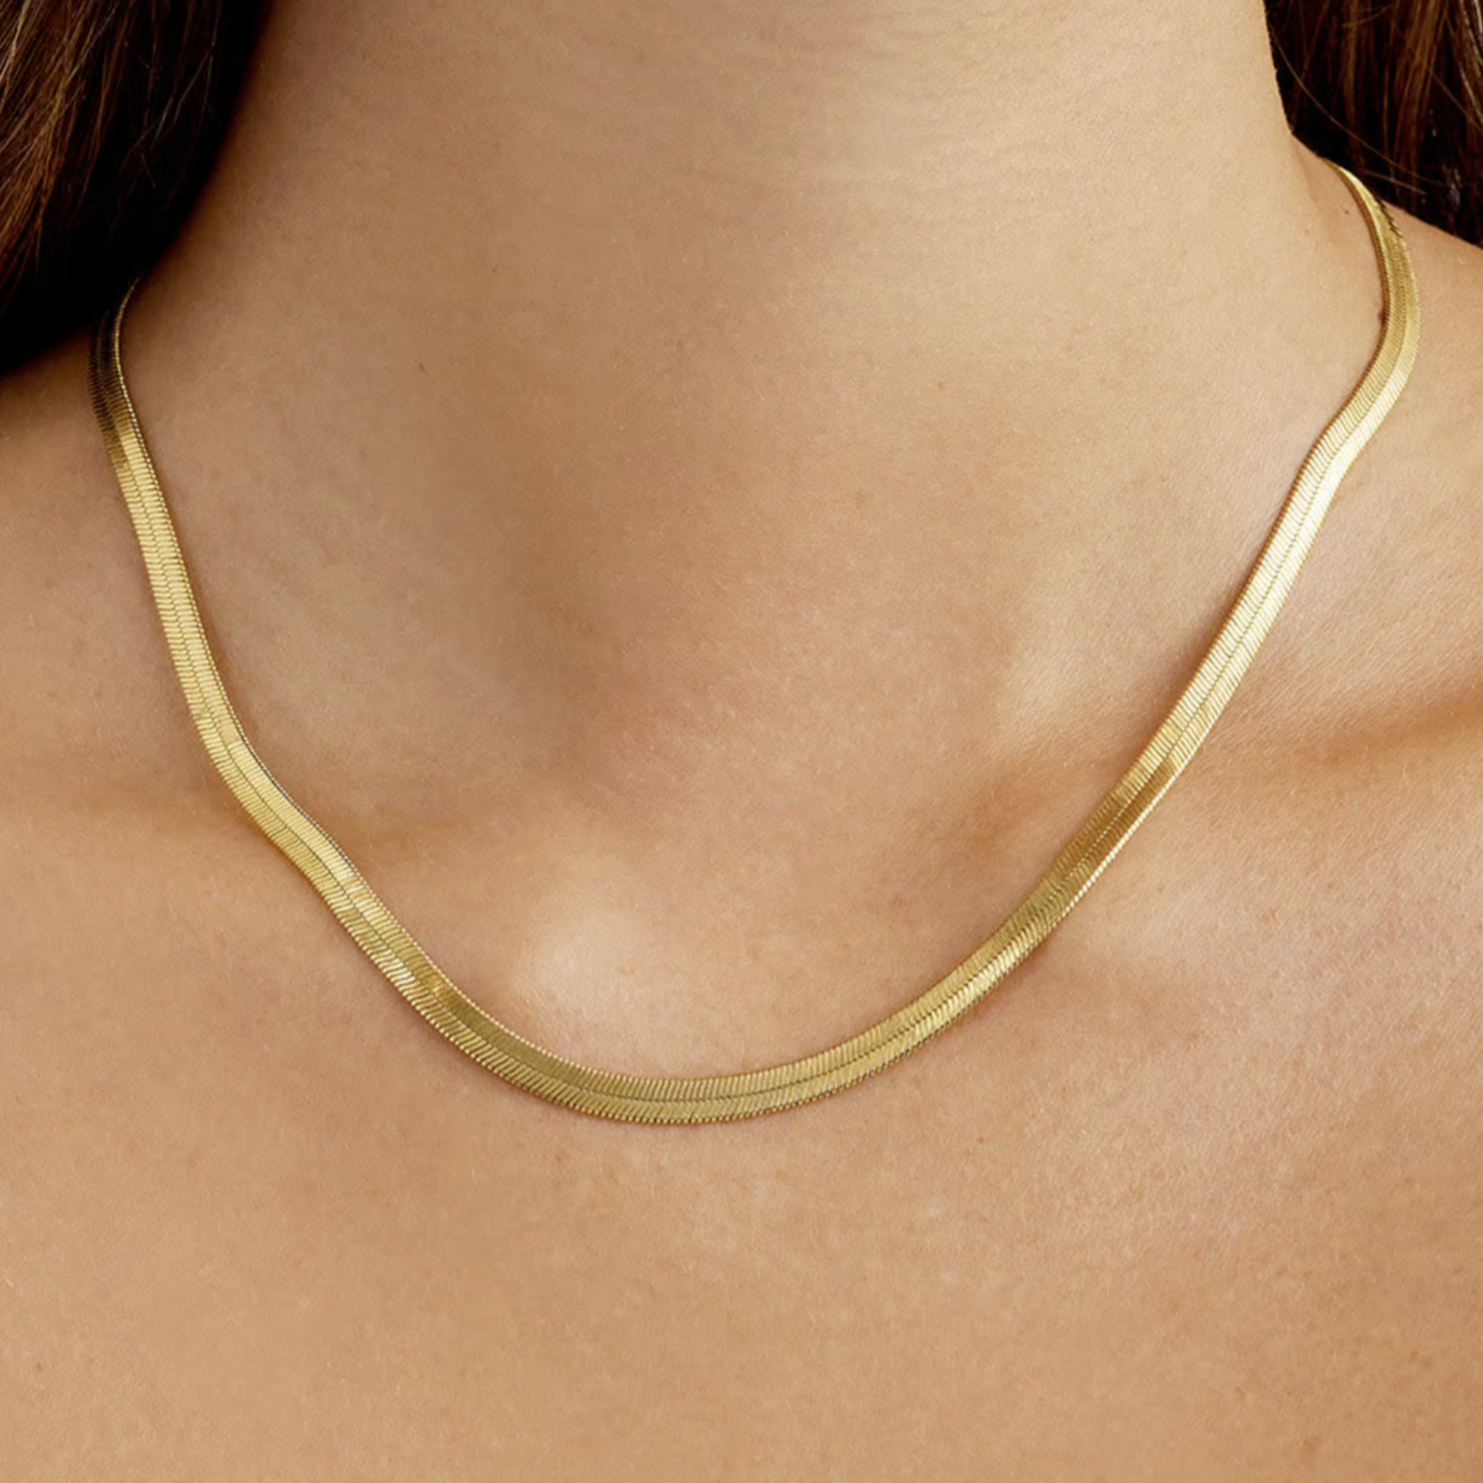 Amazon.com: gorjana Women's Wilshire Charm Adjustable Necklace, 18k Gold  Plated, Interlocking Circle Pendant : Clothing, Shoes & Jewelry